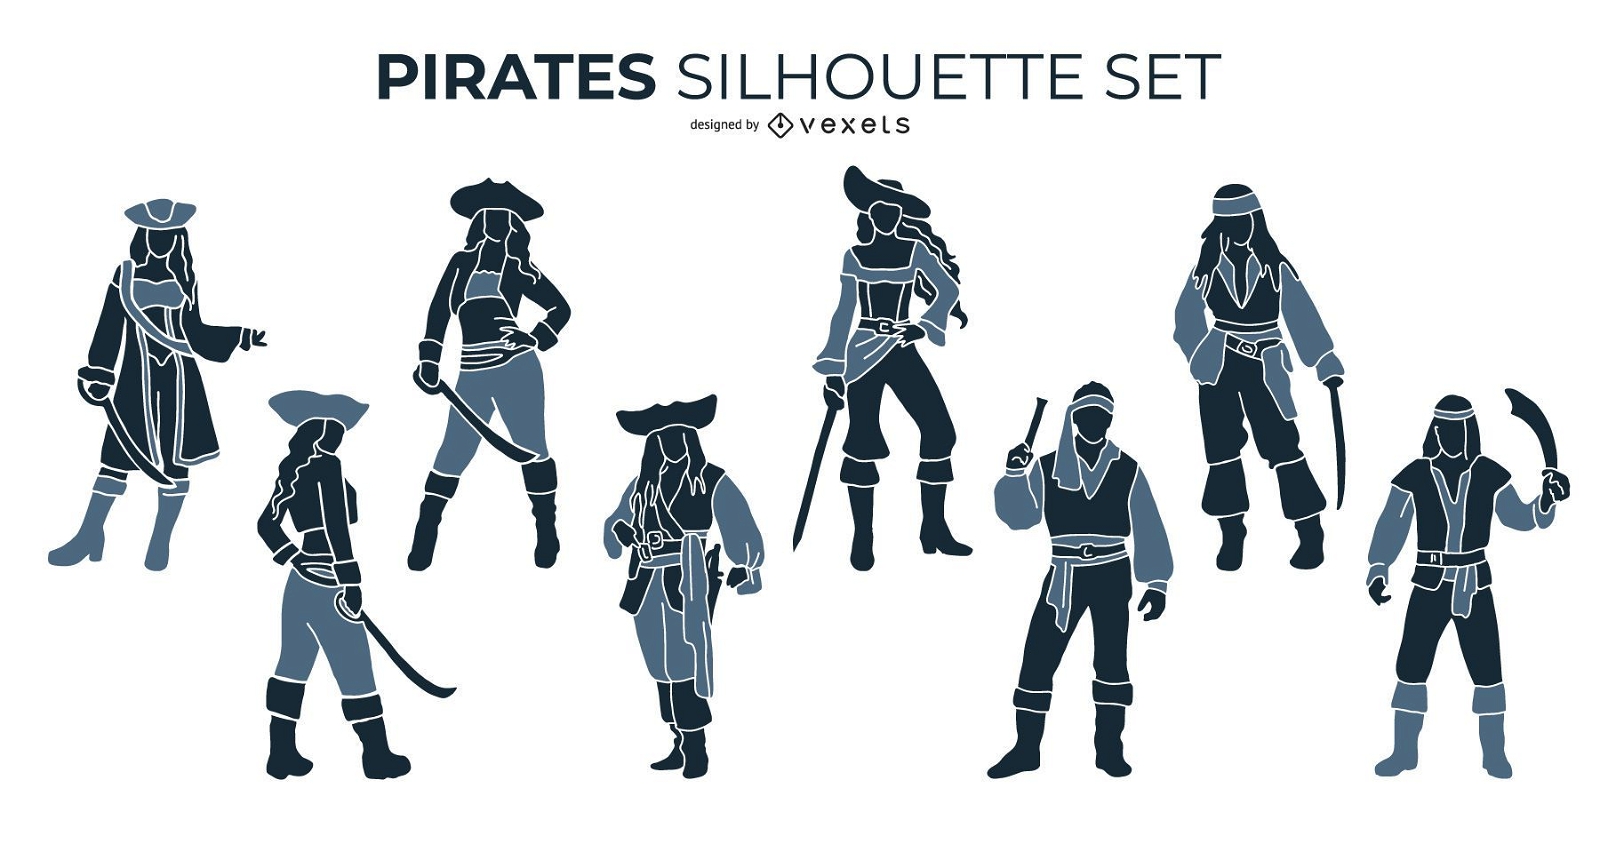 Pirates silhouette set